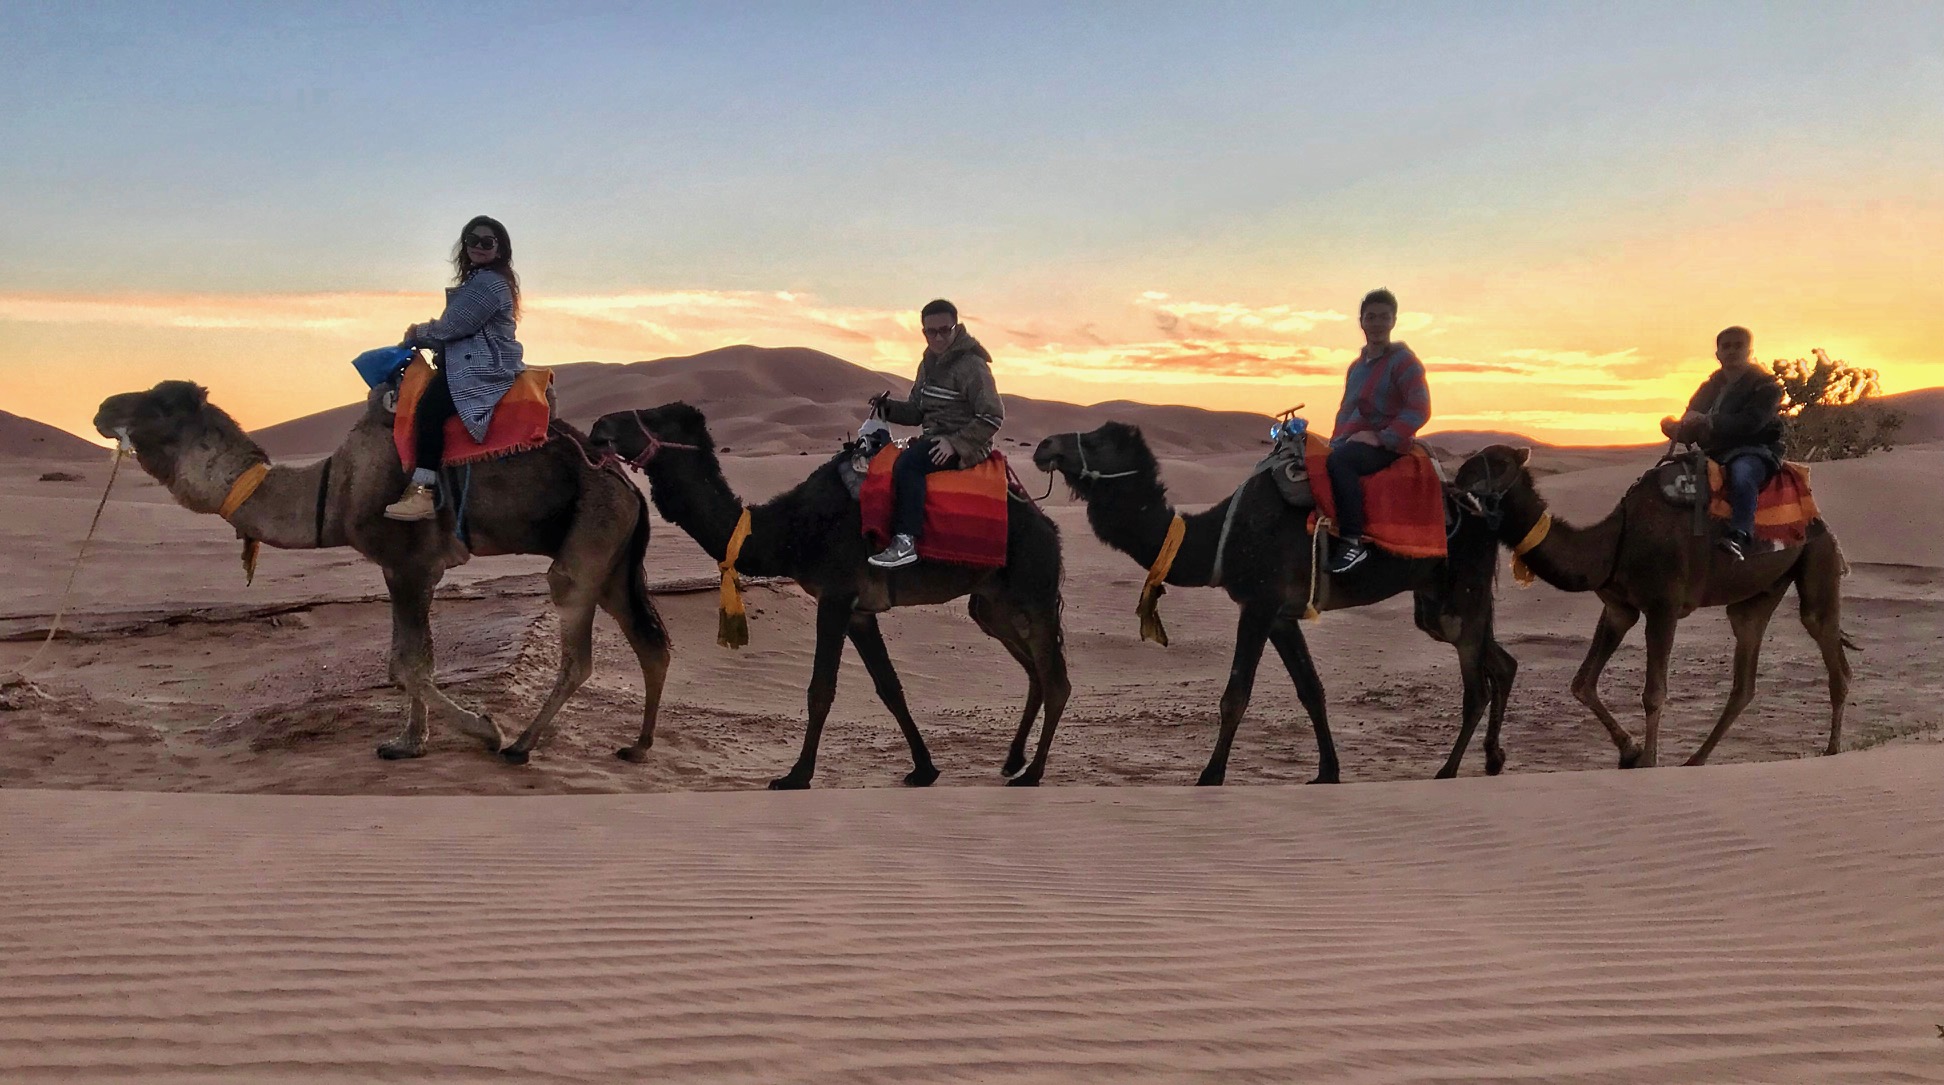 Sahara trip